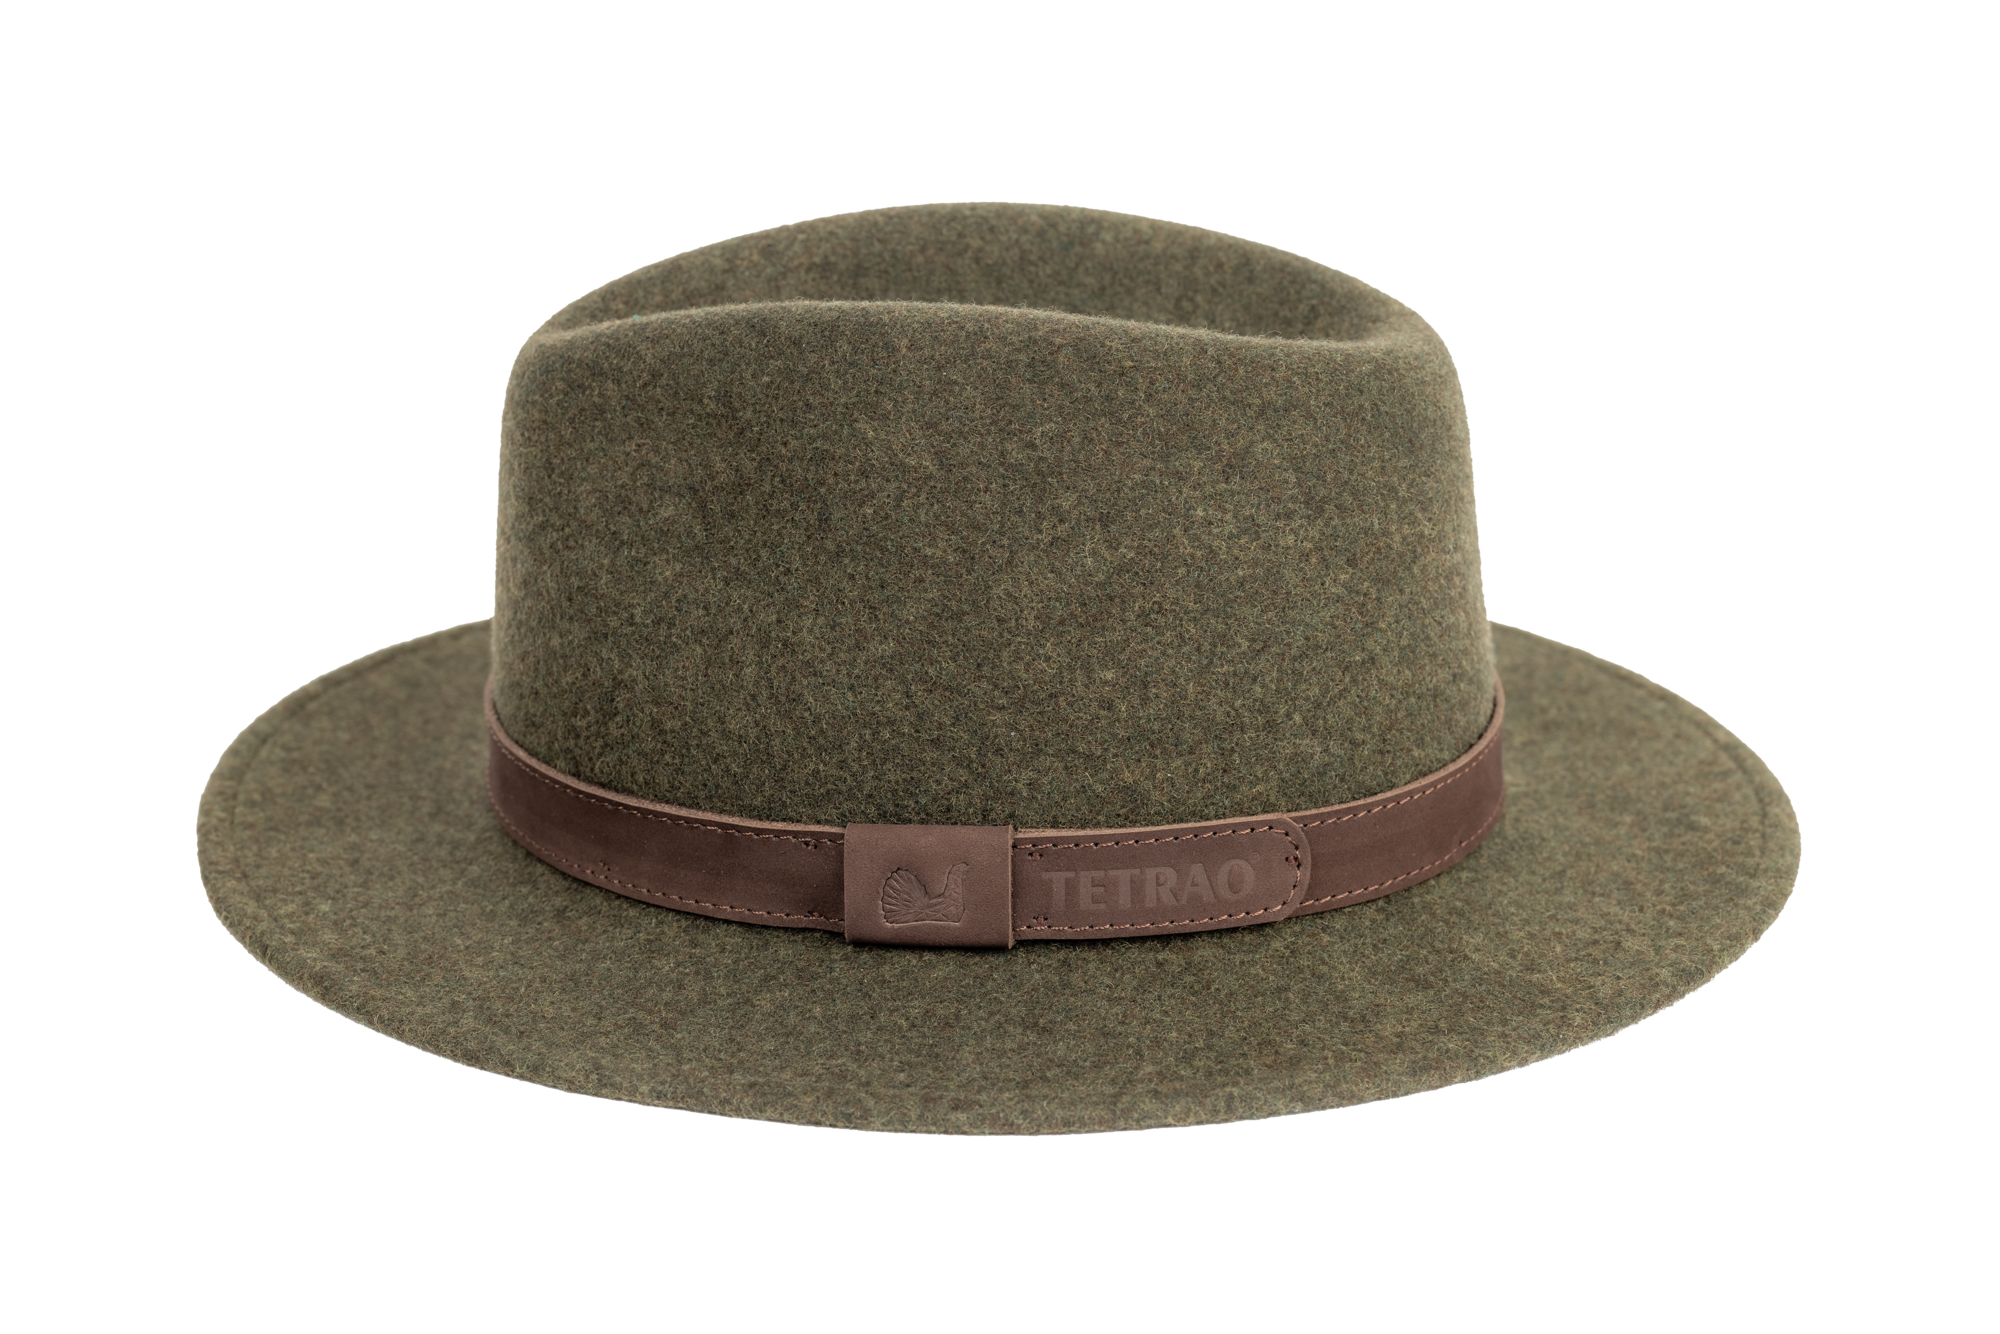 Poľovnícky klobúk TETRAO melanž UNI - zelený  60